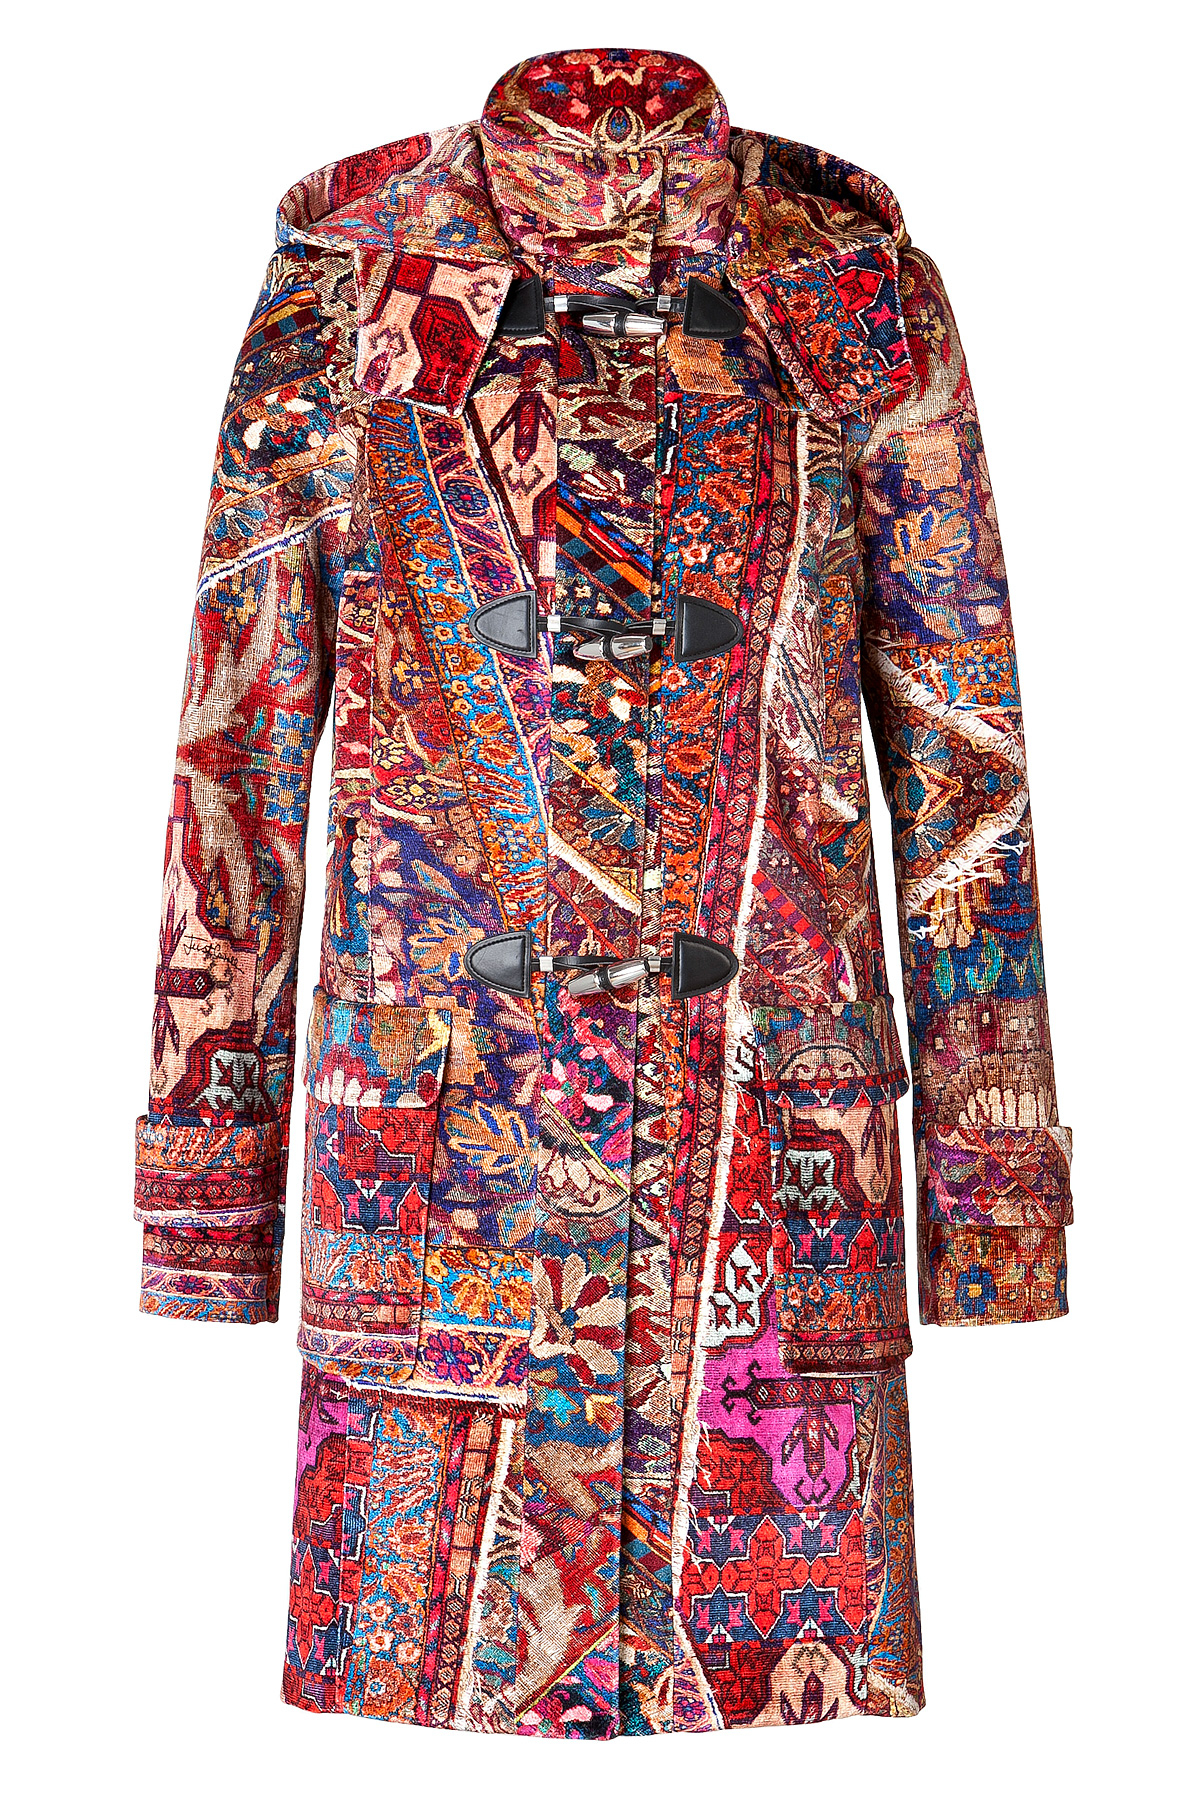 Lyst - Just cavalli Printed Velvet Hooded Coat in Brown